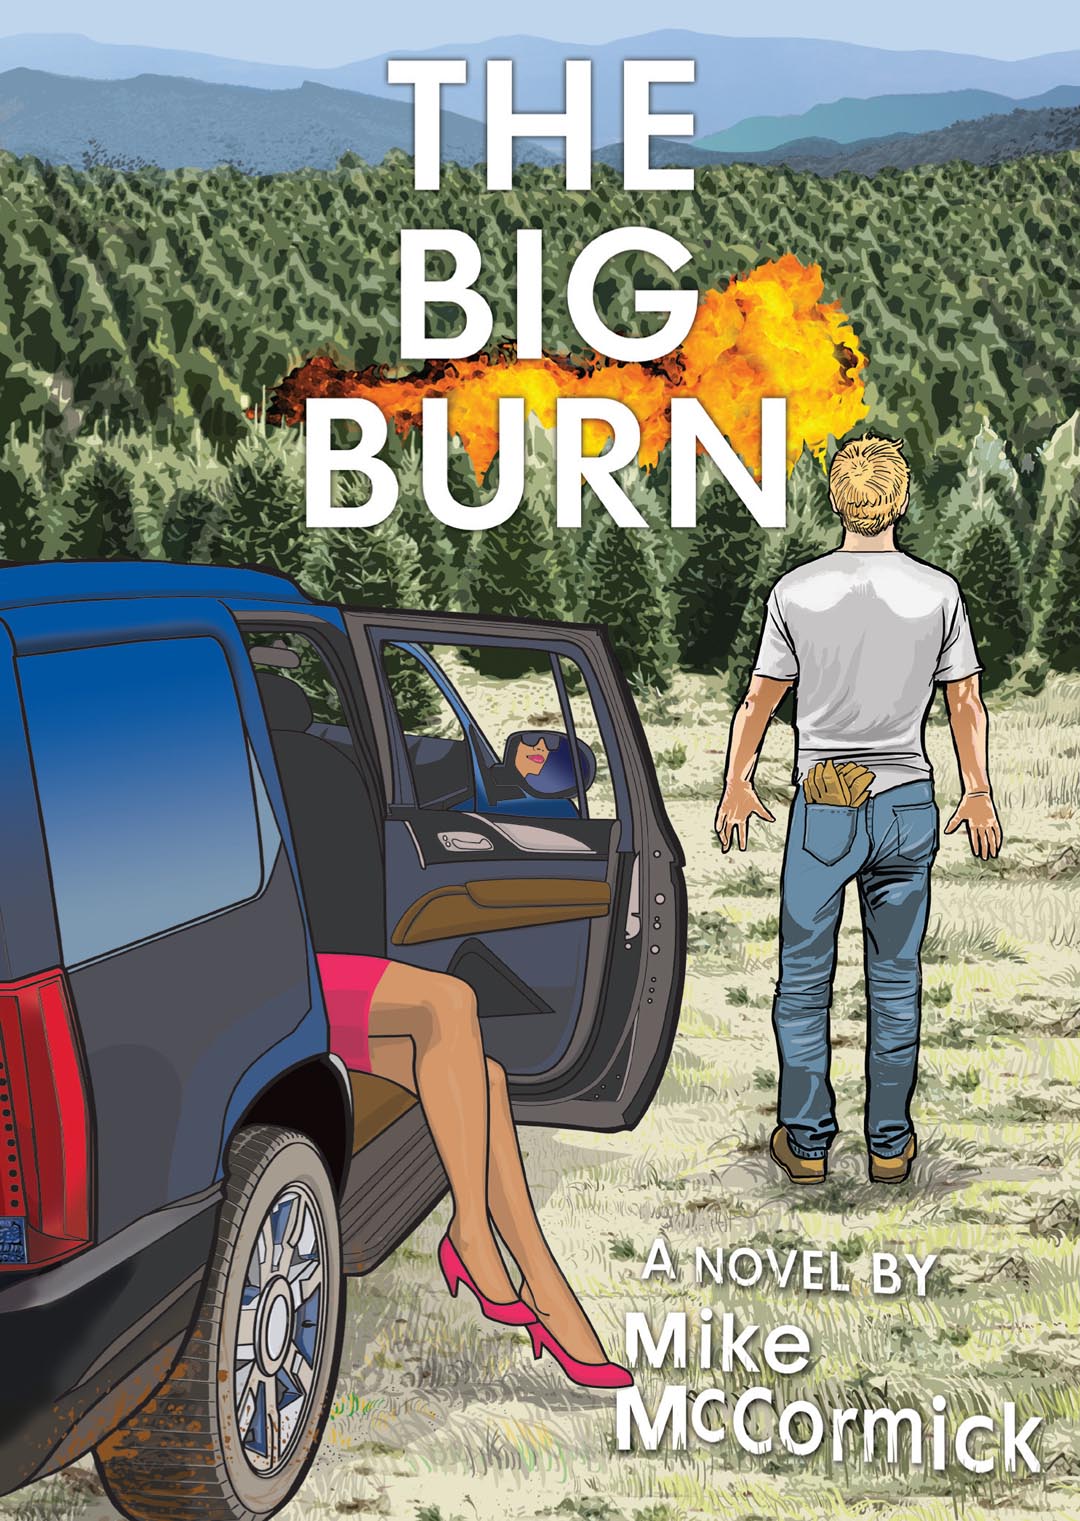 The Big Burn Book - A Novel by Mike McCormick